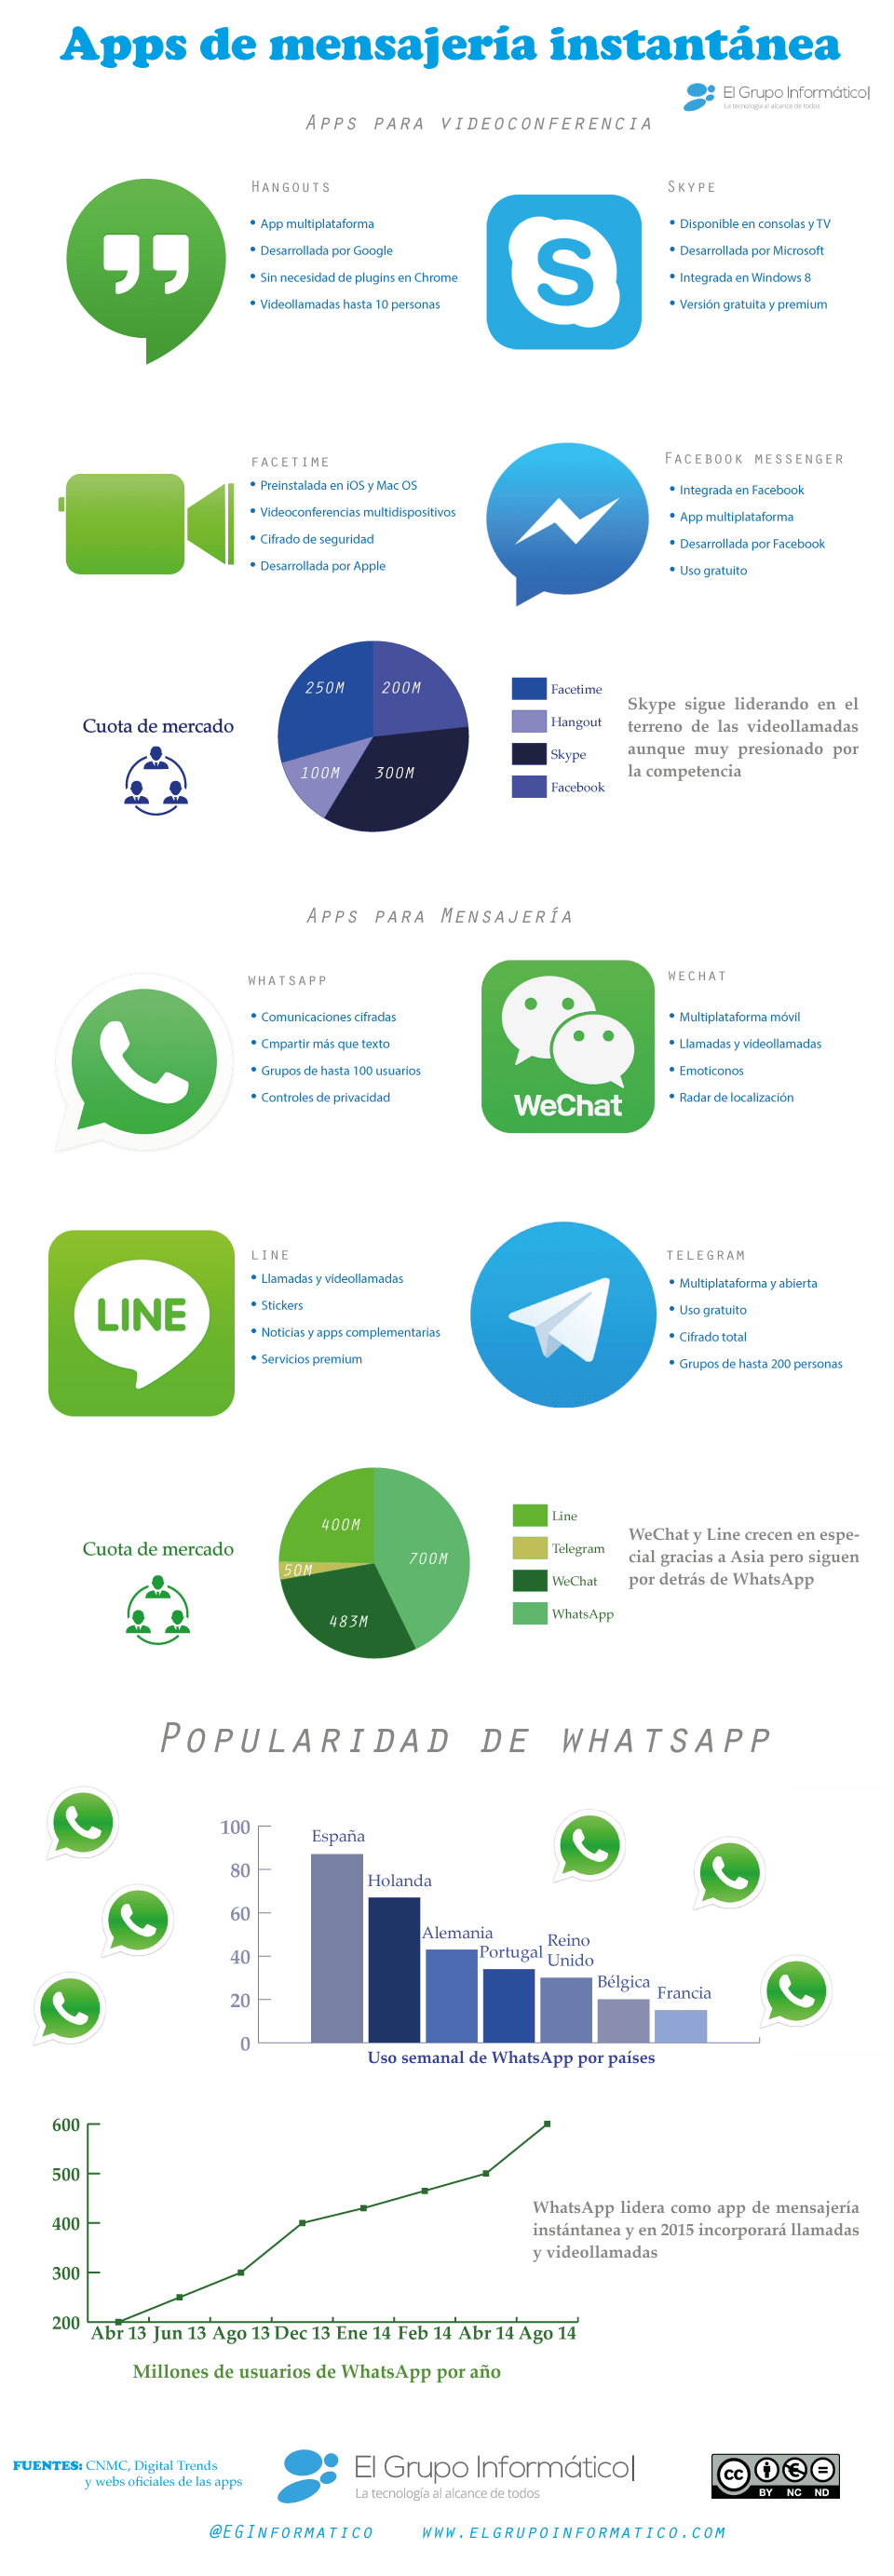 Imagen - Infografía: Apps de mensajería instantánea en 2015